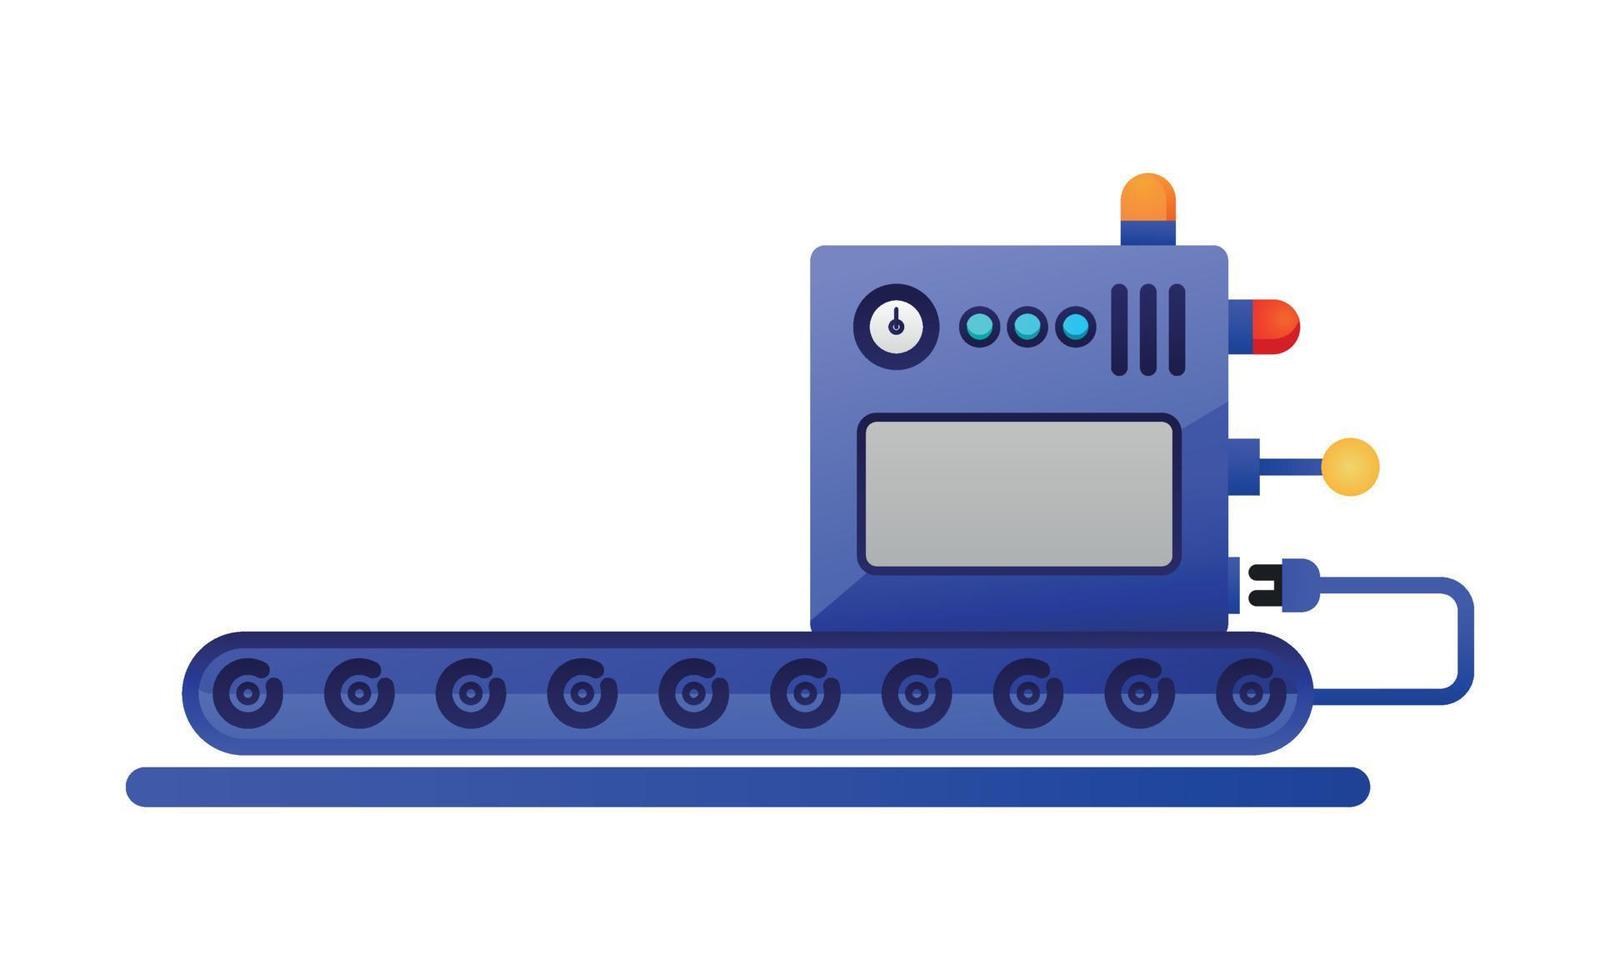 platte kleurrijke pictogram transportband machine werkt. moderne mechanische apparatuur voor productie, fabrieken en industrie. vector illustratie